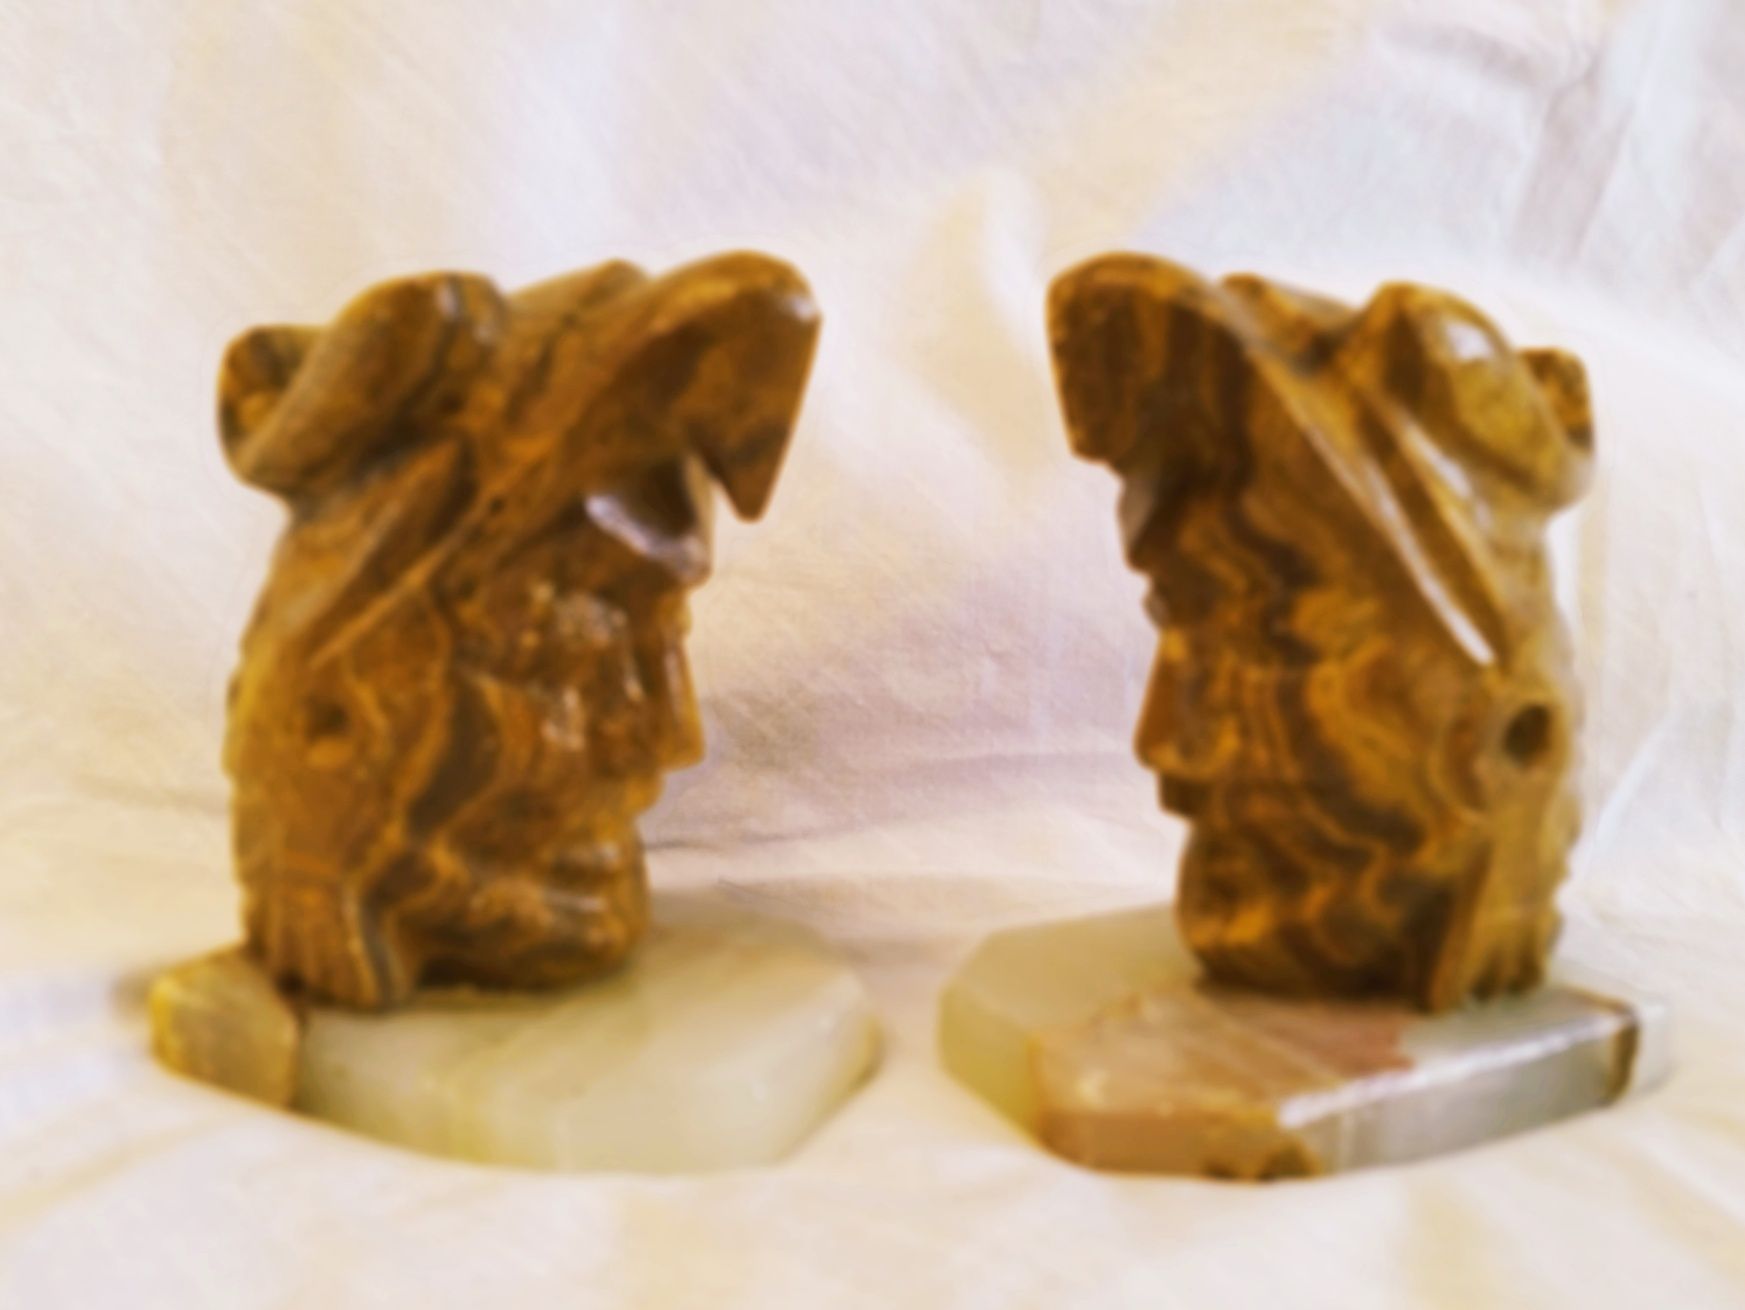 Pereche figurine maiașe vechi cu suport onix, 12cm.

Figurine maiașe